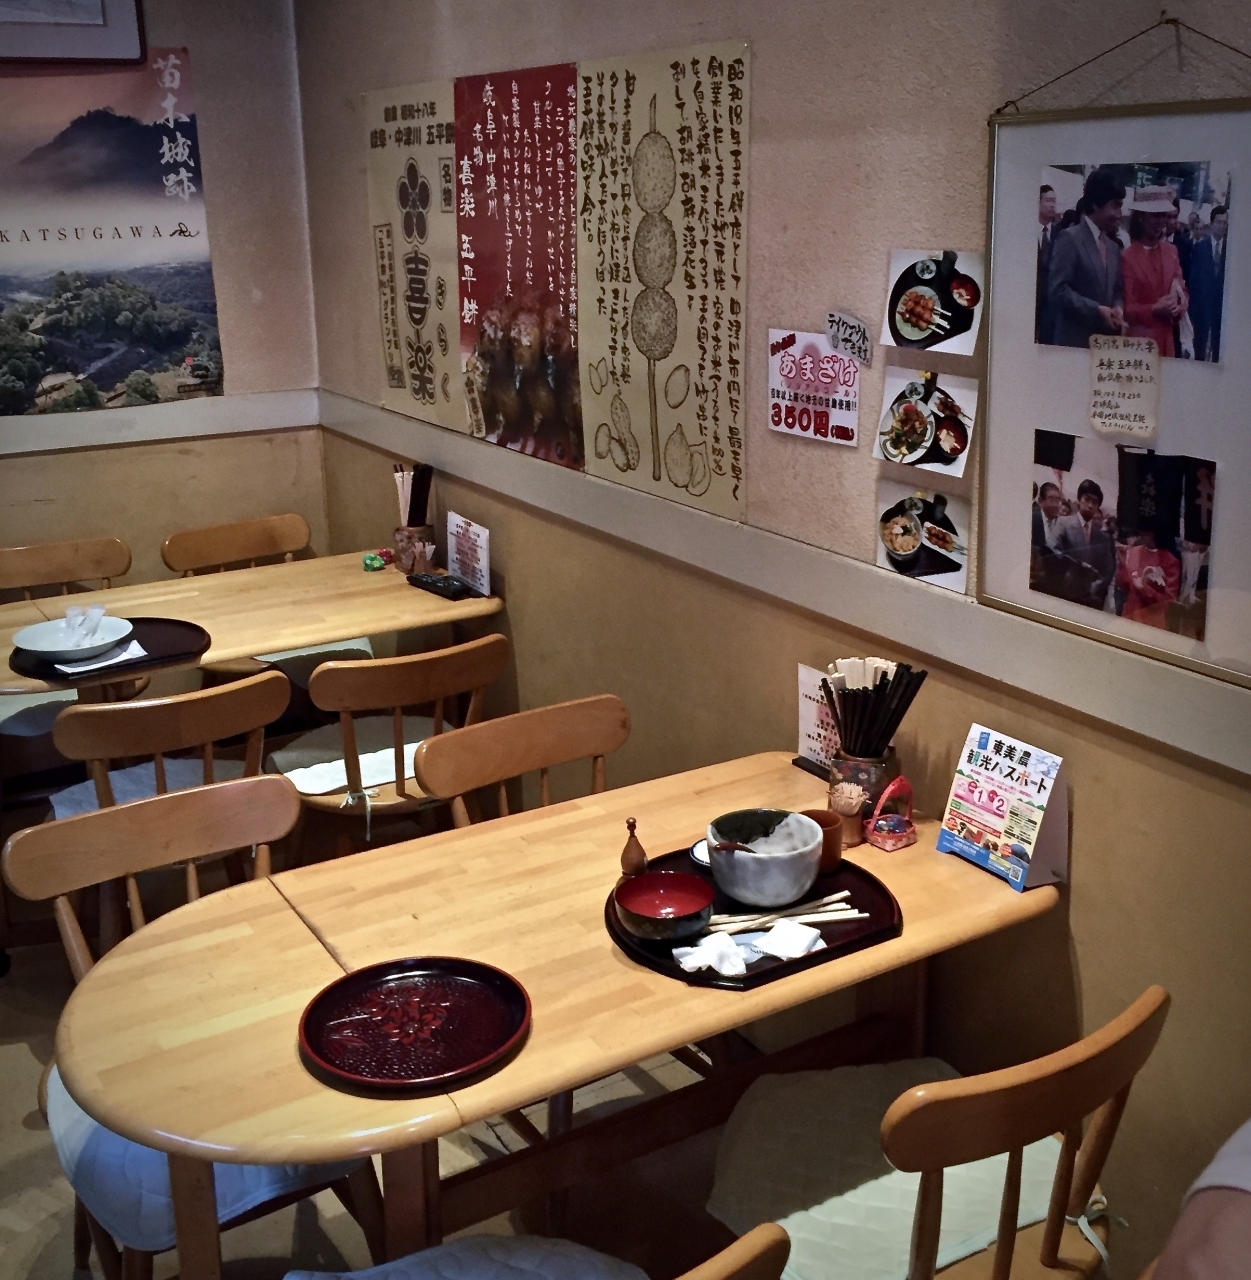 【五平餅 喜楽】

でも実はここ...昭和18年中津川市街 桃山において五平餅専門店として最も早く創業した伝統的な五平餅のお店の...駅前店なんです。

写真：前の家族ずれの食べかすが、汚い....ですが....
